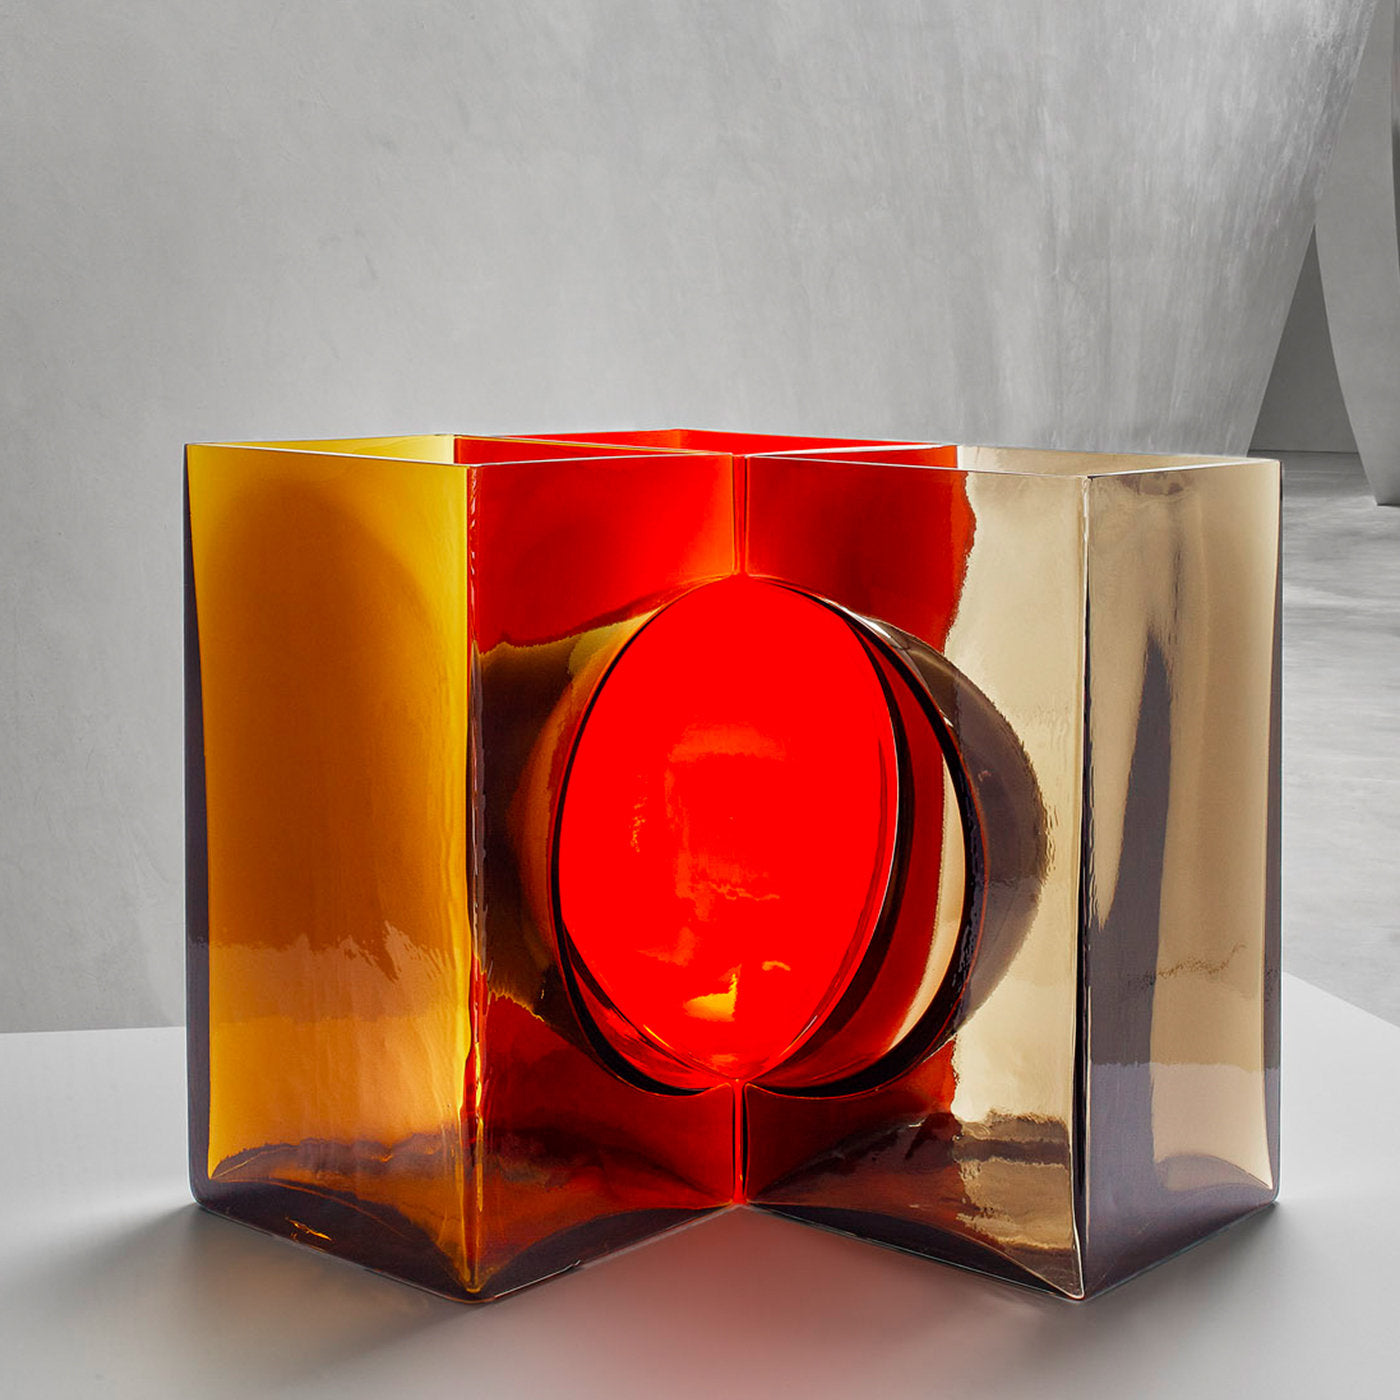 Ando Cosmos Red Crystal Sculpture by Tadao Ando - Alternative view 1